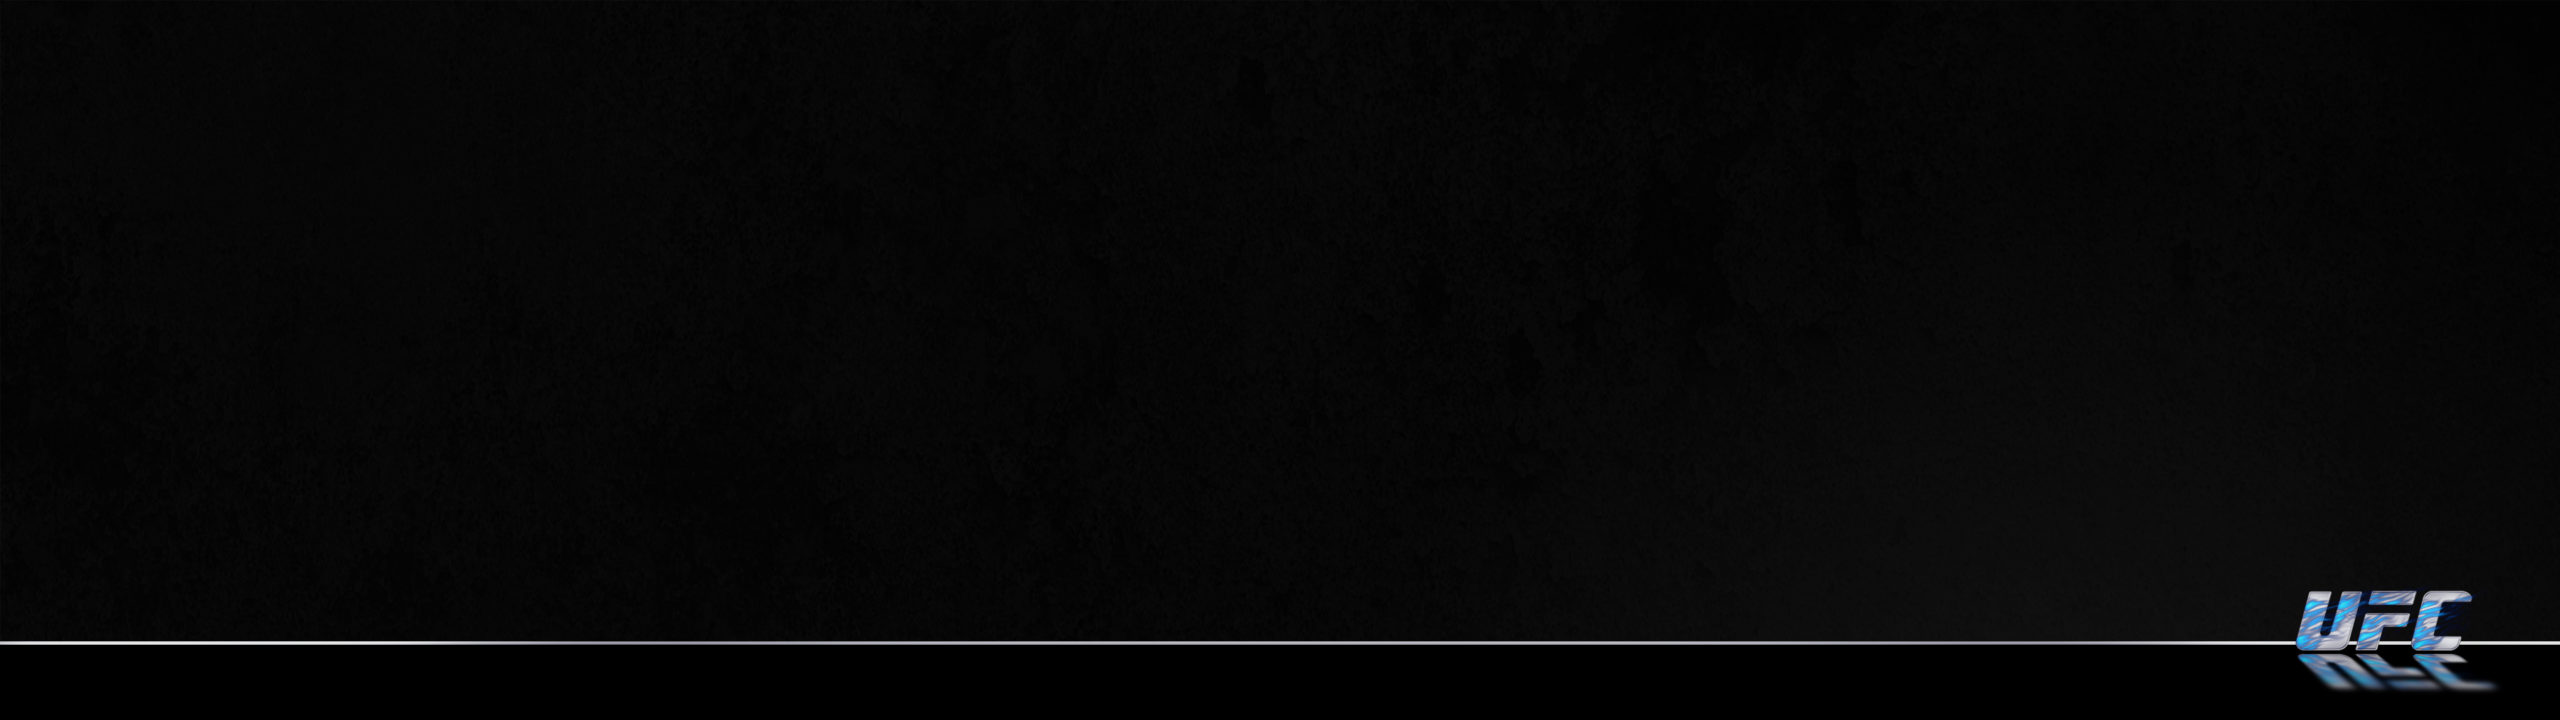 Ufc Flames Grunge Black 6 Blue Background 1080×3840